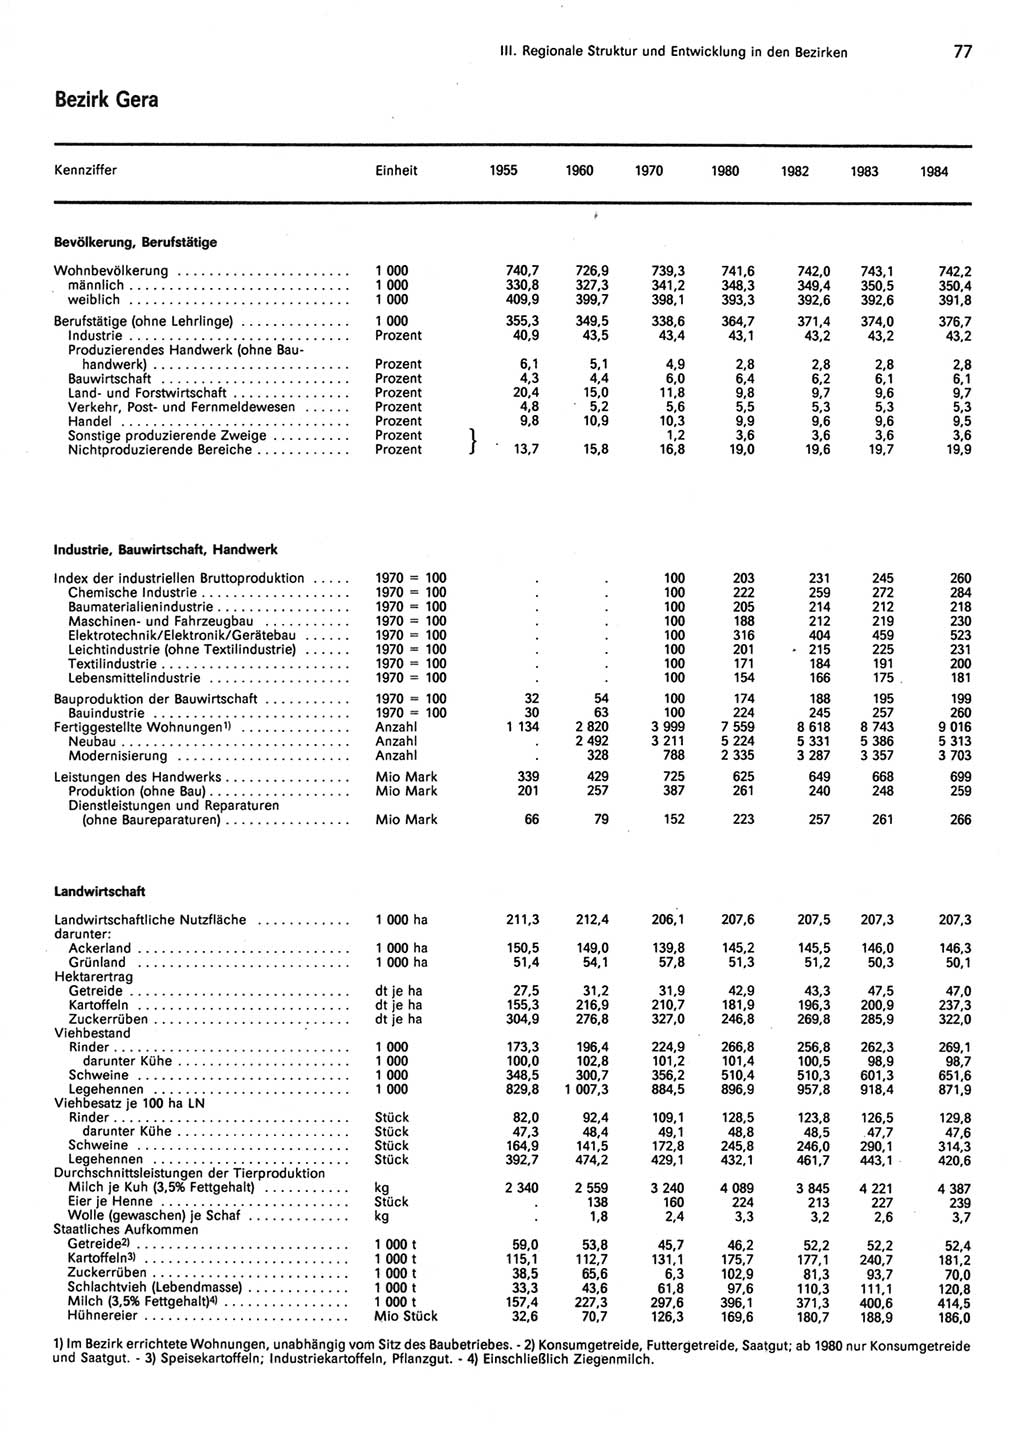 Statistisches Jahrbuch der Deutschen Demokratischen Republik (DDR) 1985, Seite 77 (Stat. Jb. DDR 1985, S. 77)